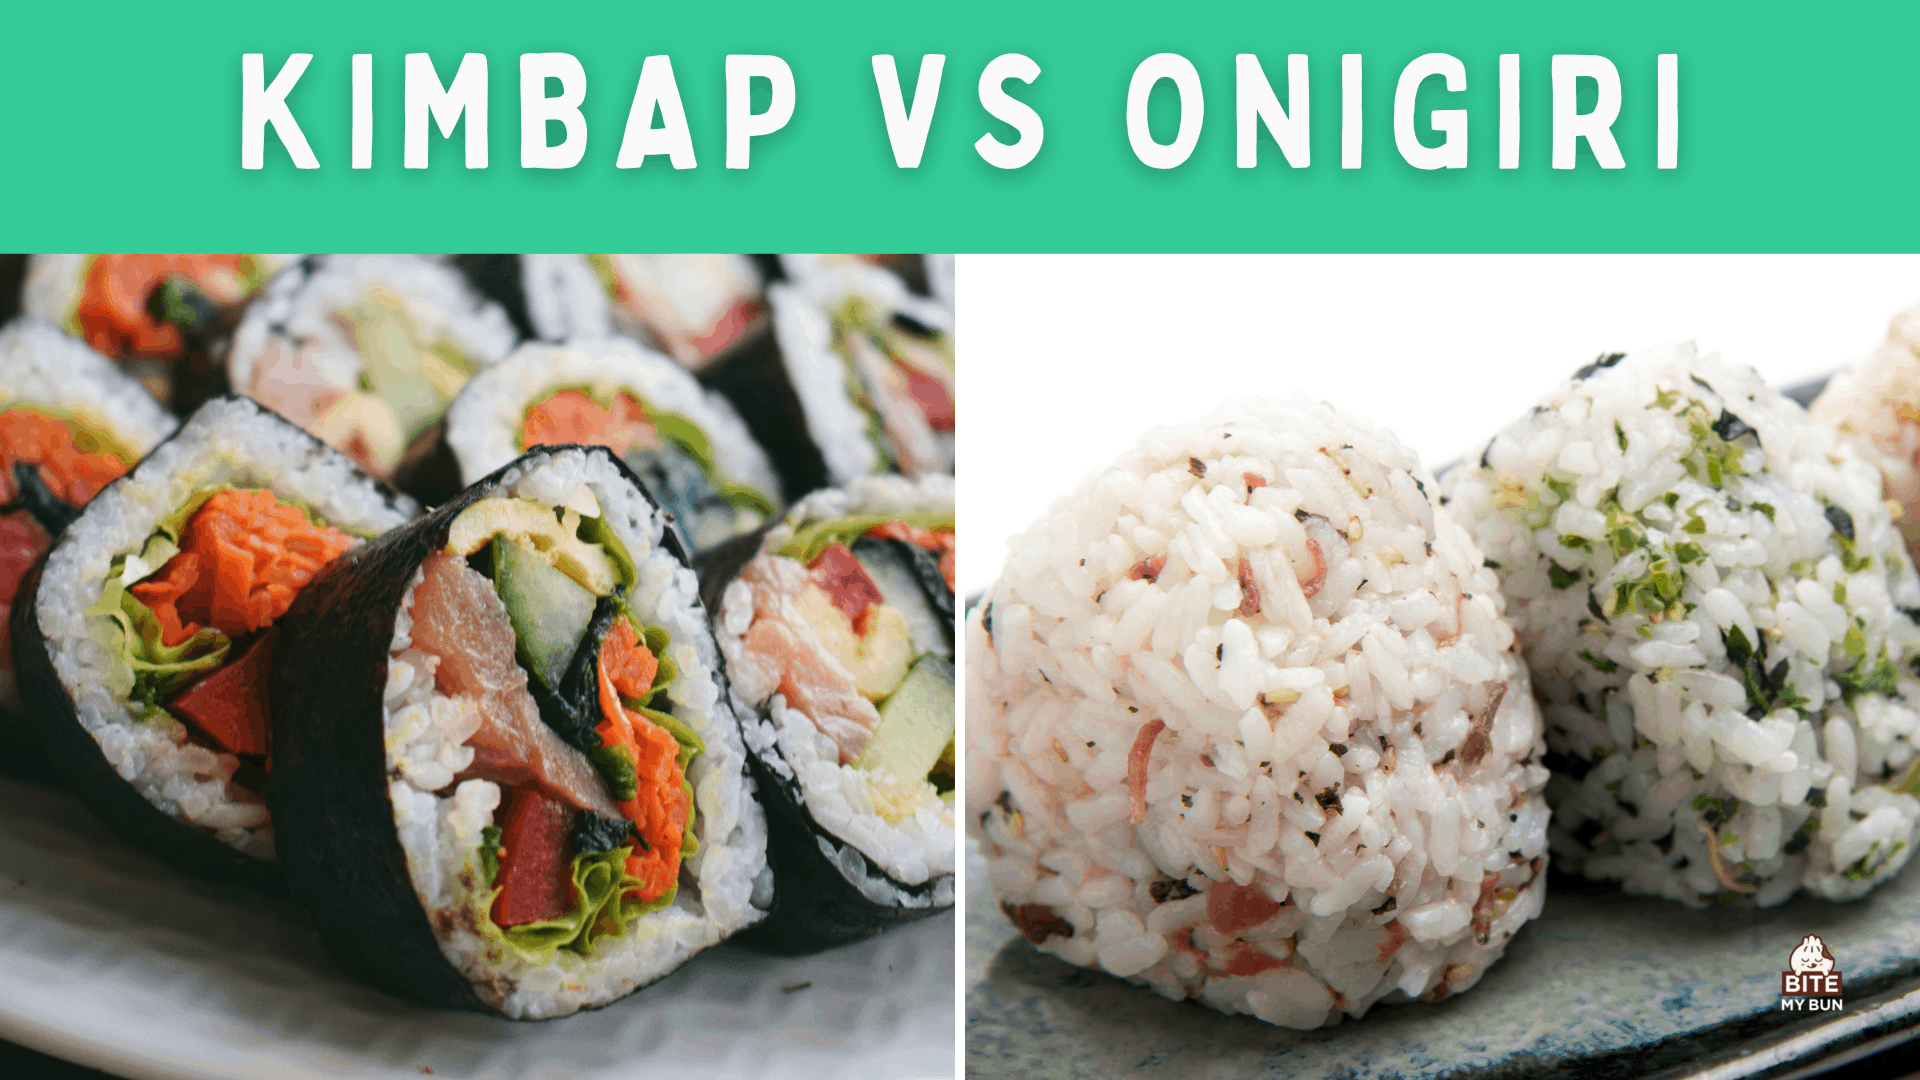 Kimbap vs onigiri | Ho bapisoa lijana tse peli tsa raese tsa Asia tsa raese